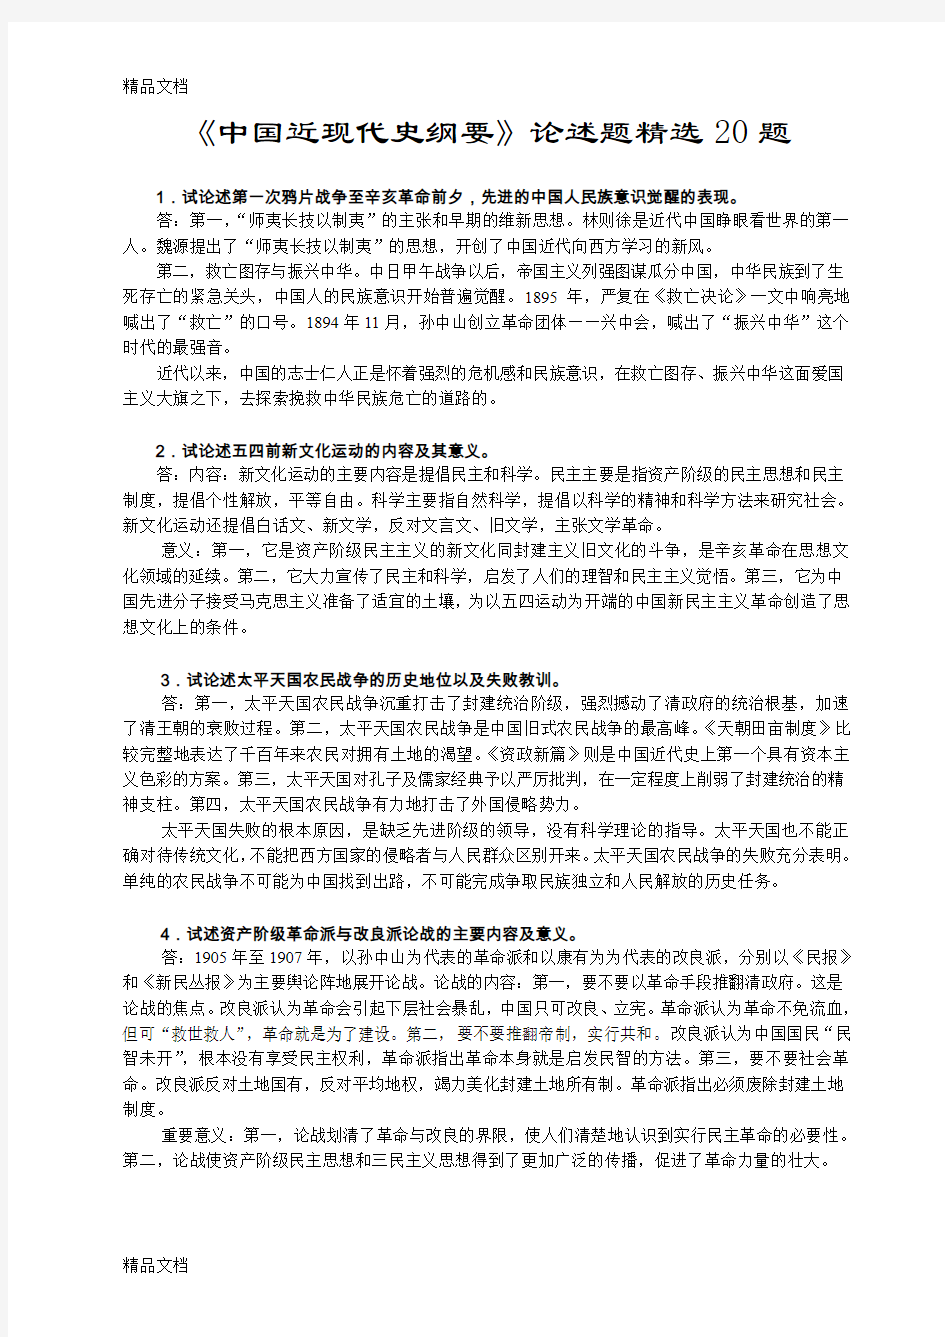 中国近现代史纲要论述题精选20题教学提纲